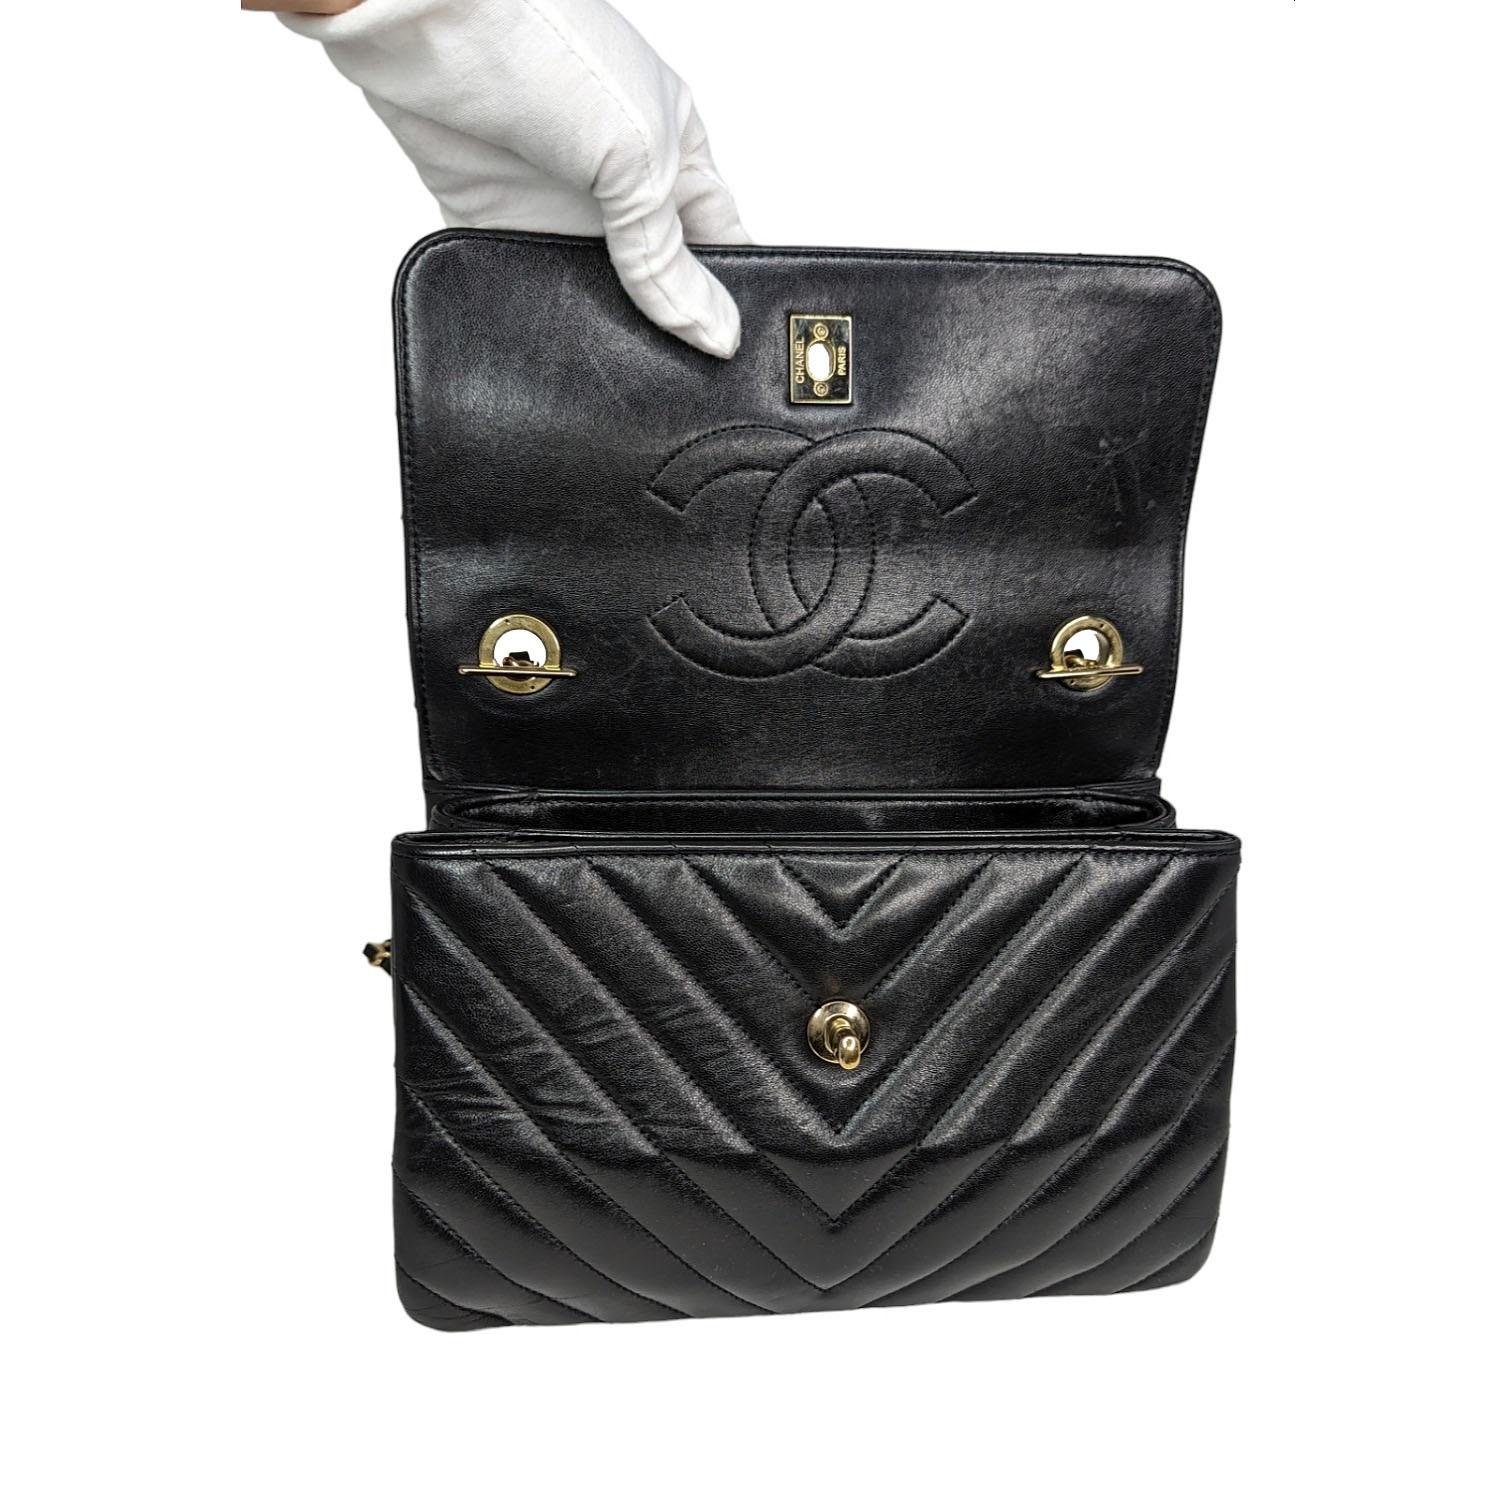  Chanel Black Trendy CC Chevron Top Handle Flap Bag Pour femmes 